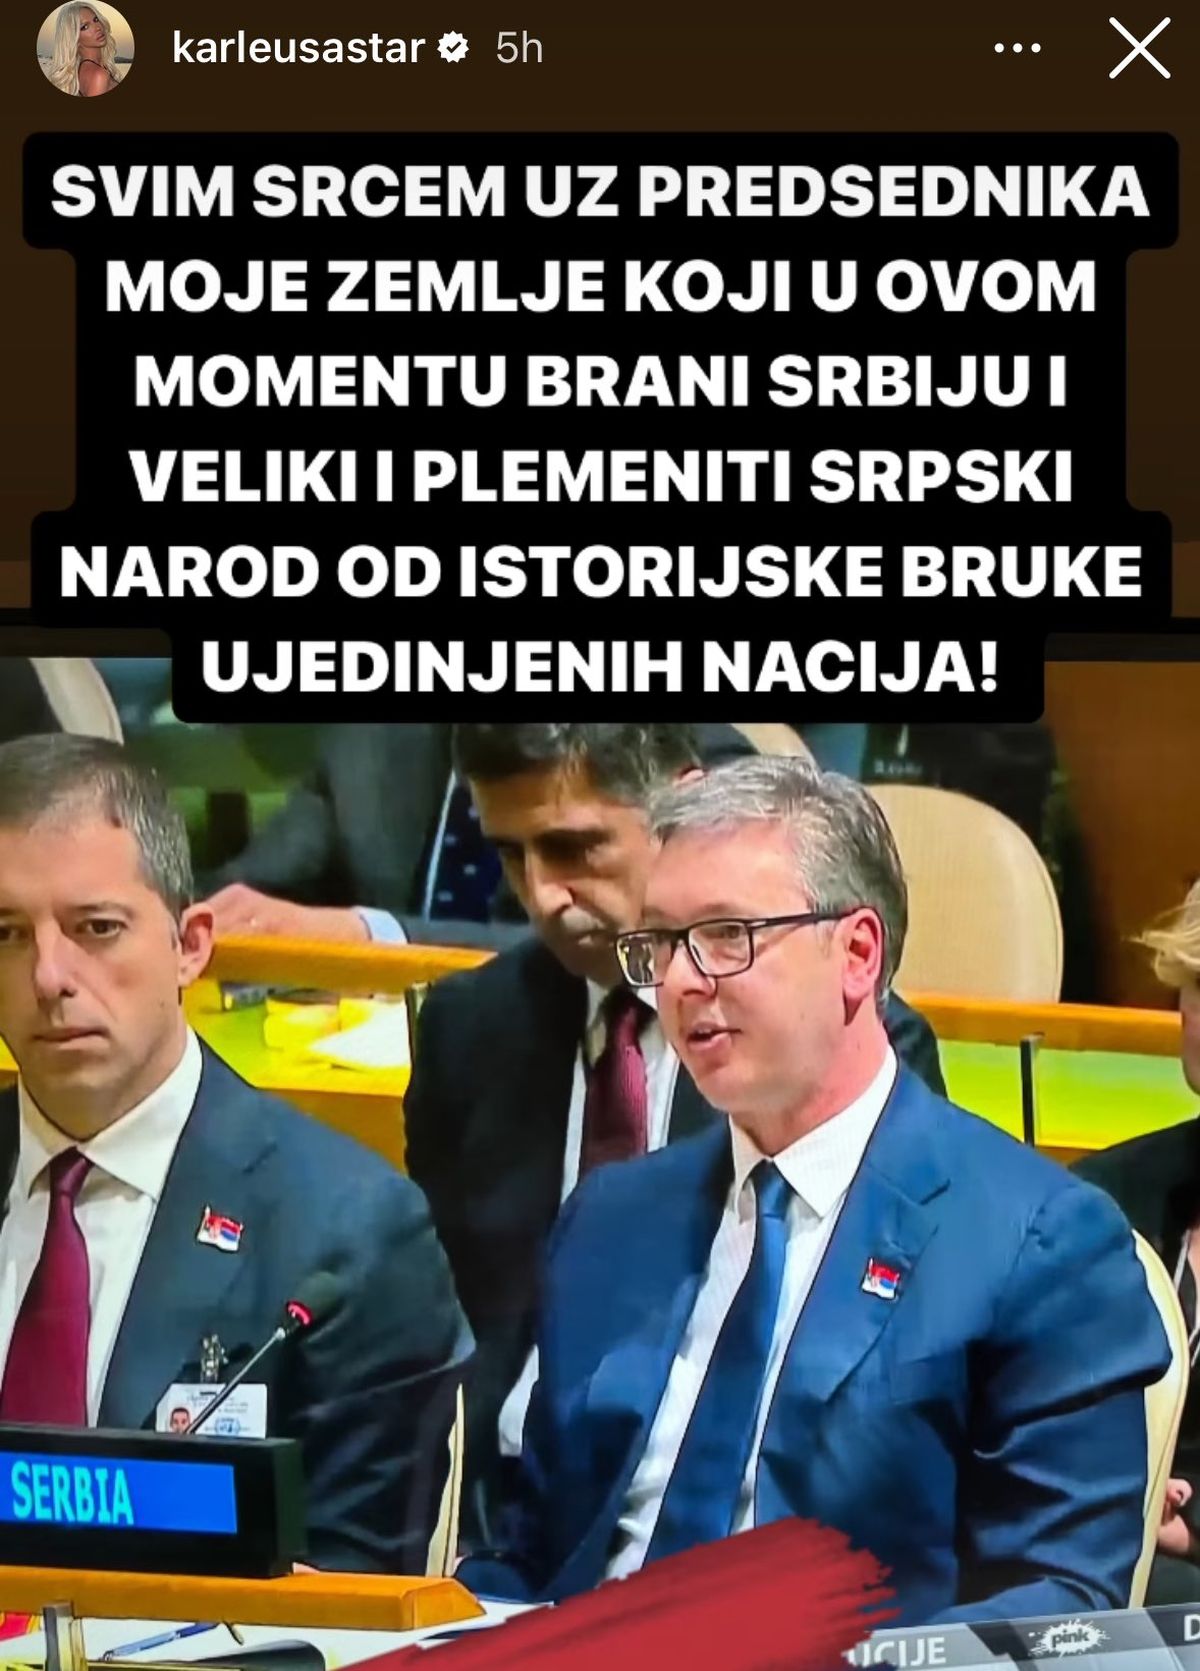 Jučerašnja podrška Vučiću